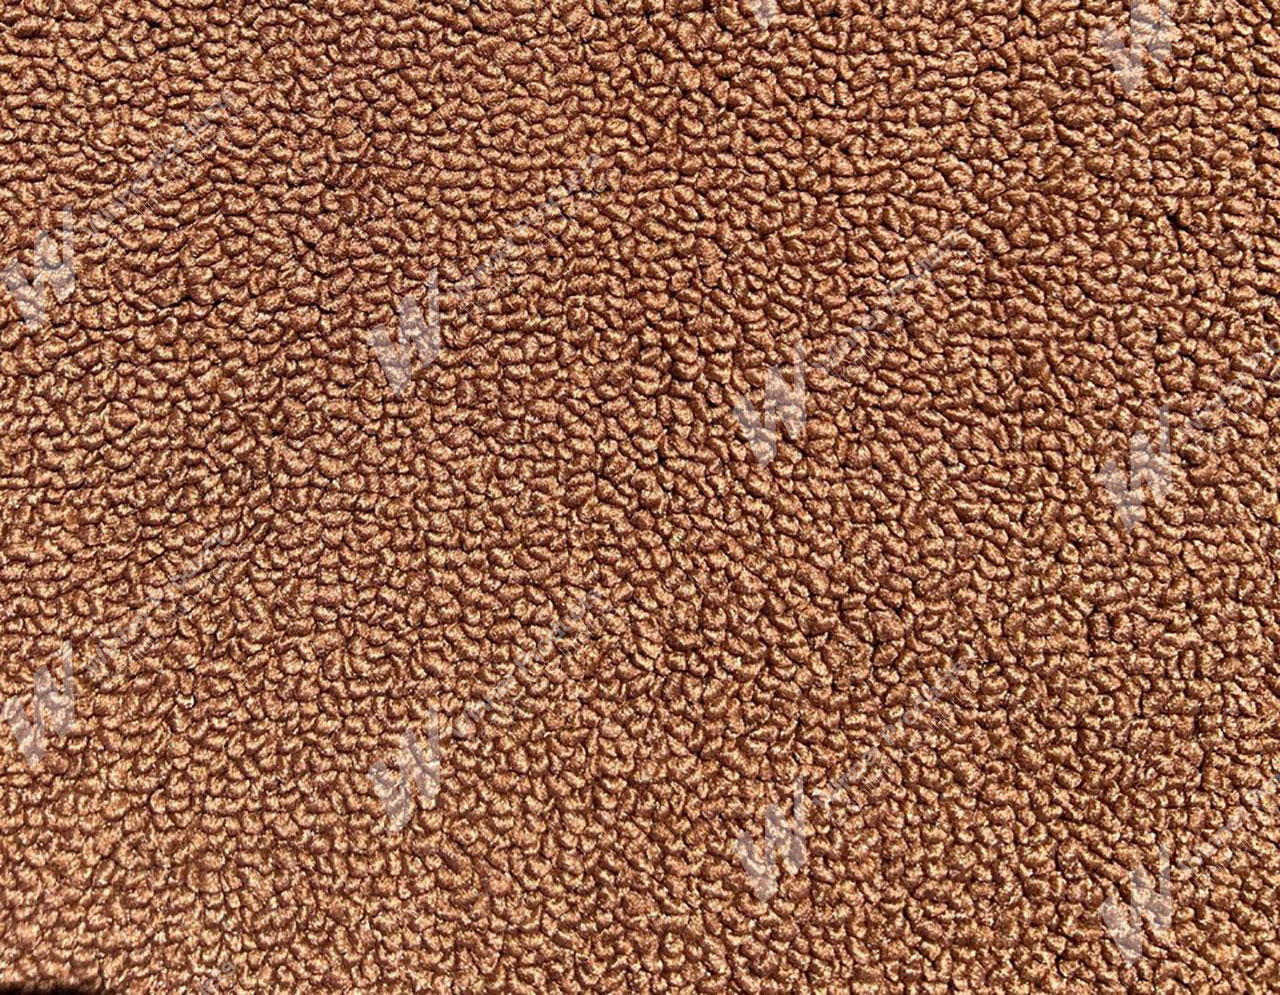 Holden Kingswood WB Kingswood Ute 67V Tan Carpet (Image 1 of 1)